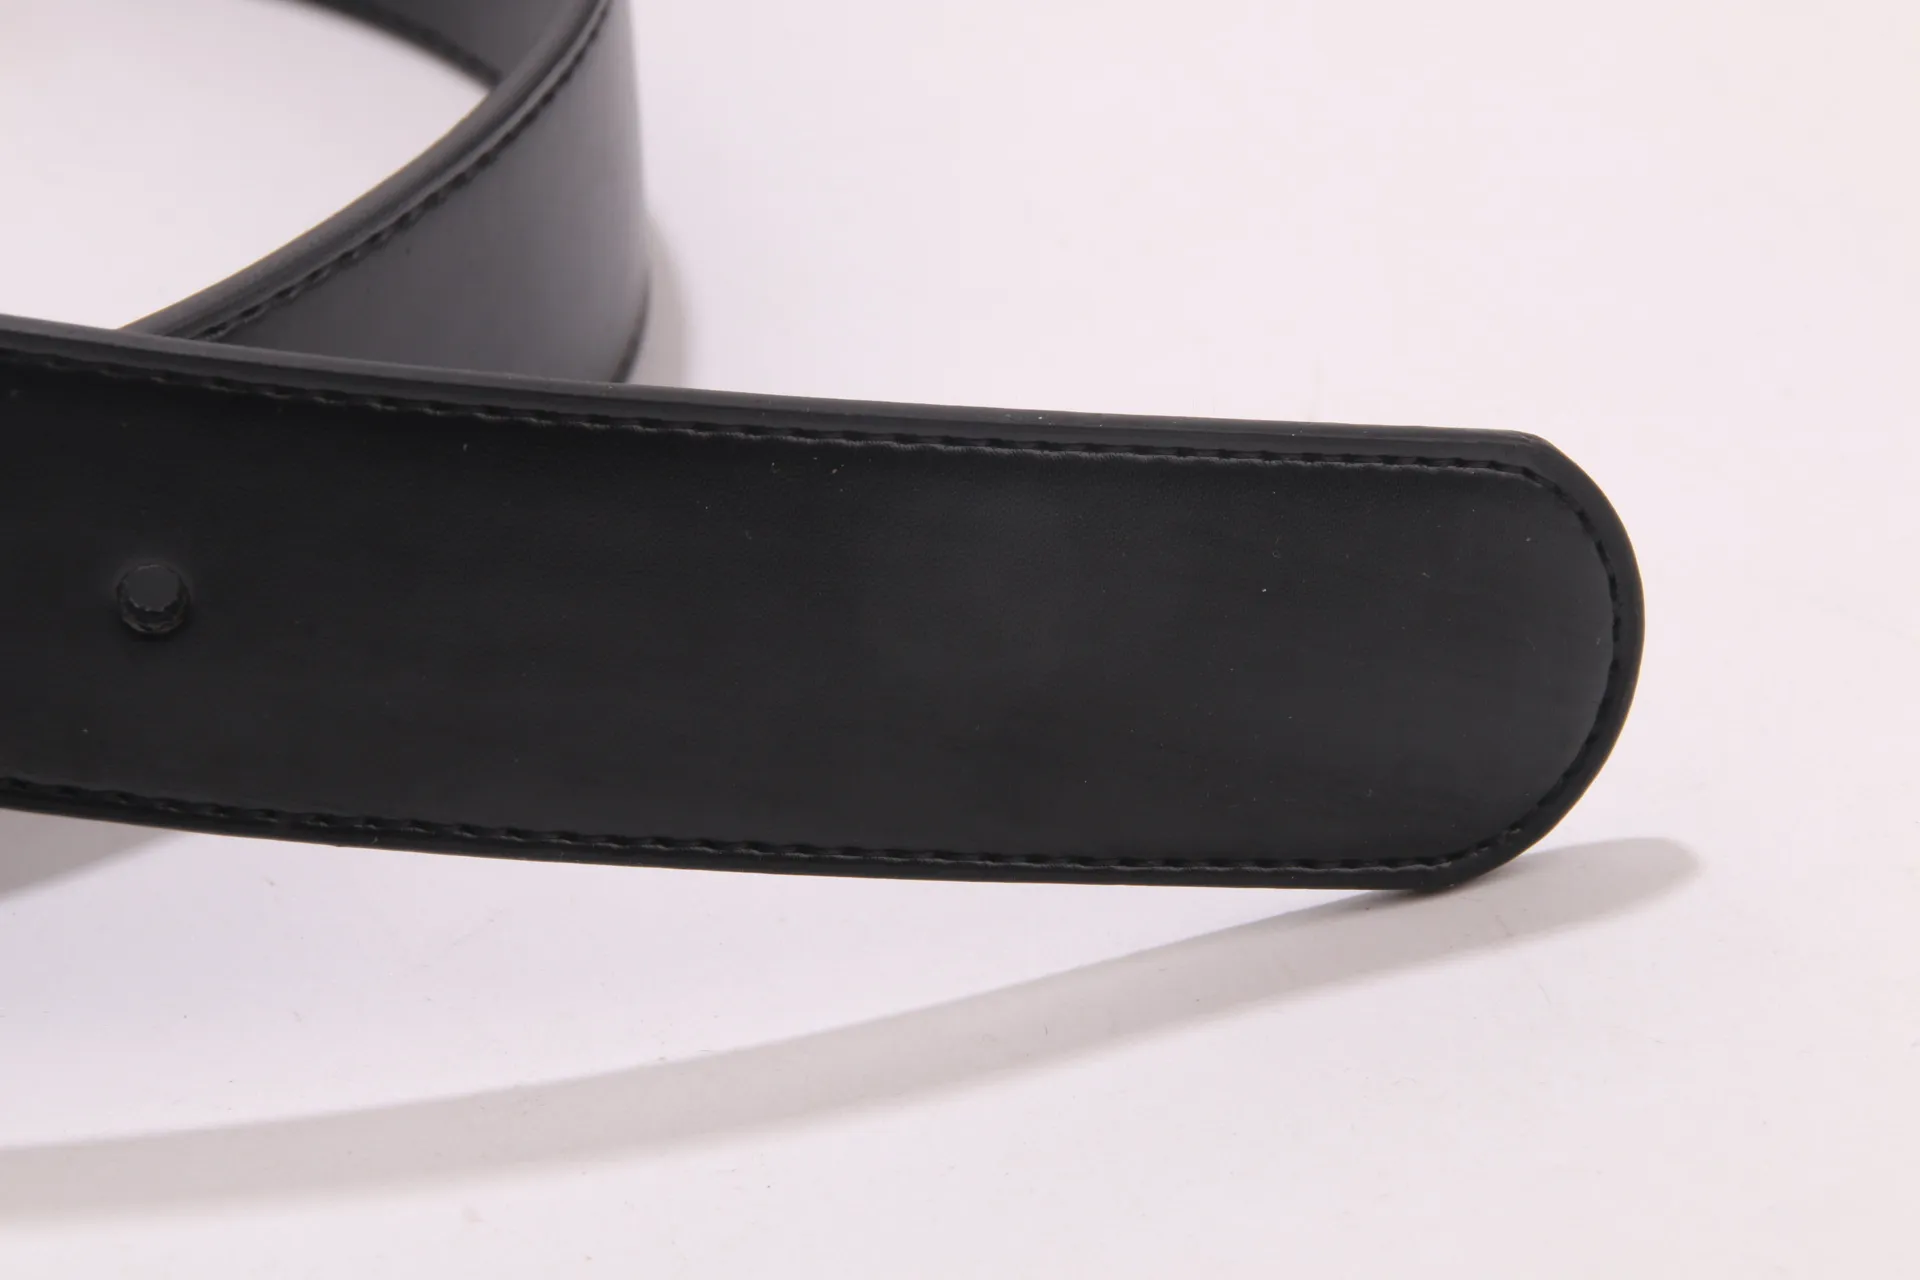 2018 com boa fivela grande feminina cinturões de alta qualidade designer cinto de couro genuíno para mulheres cintos 261p